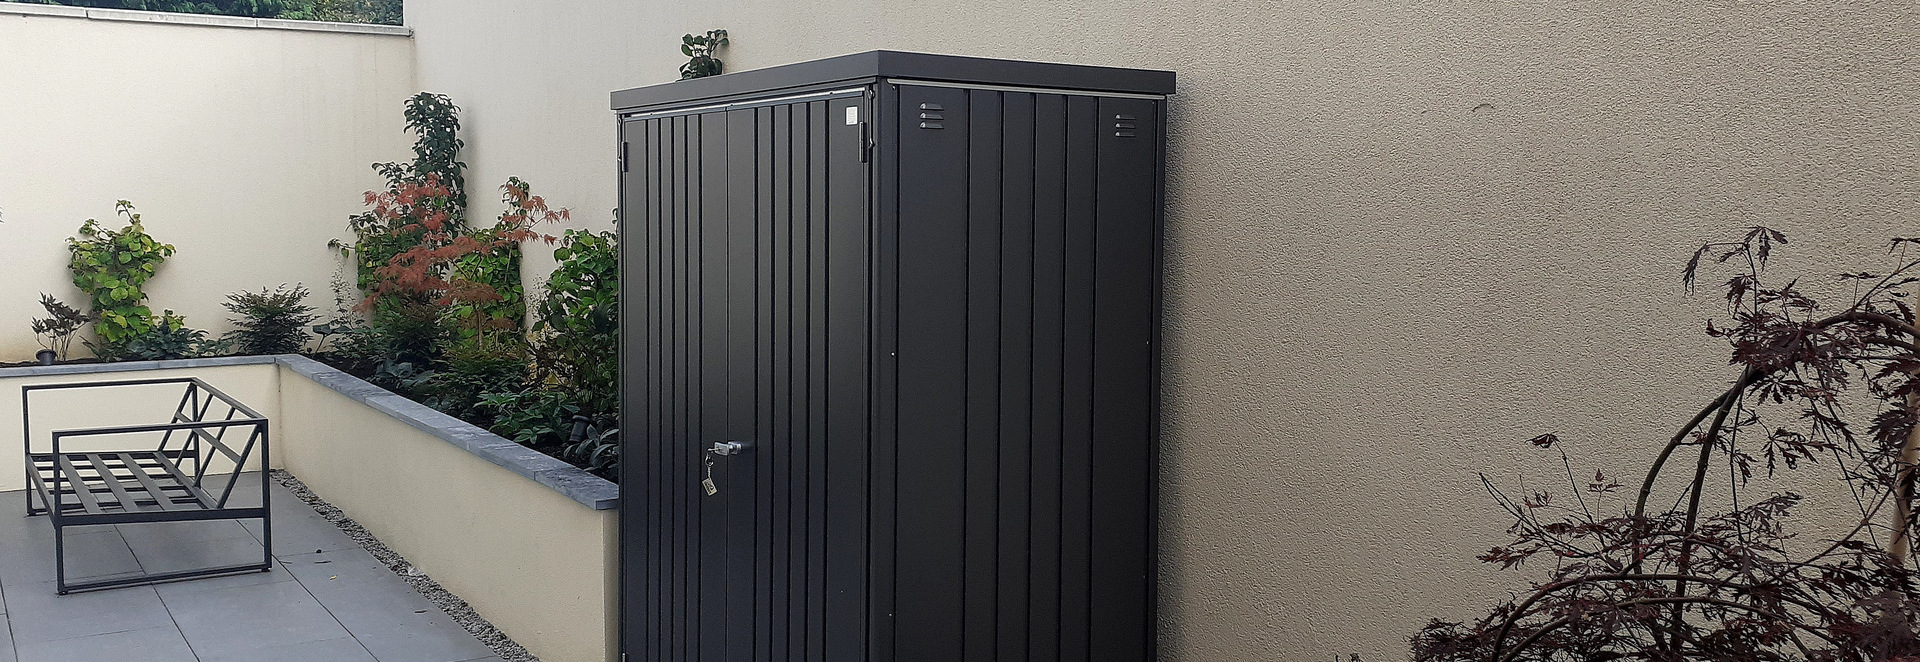 Biohort Equipment Locker 150 in metallic dark grey | premium quality steel storage shed for patio & garden | Supplied & Fitted by Owen Chubb in Glasnevin, Dublin 11  | BEST PRICES in Dublin | Tel 087-2306 128